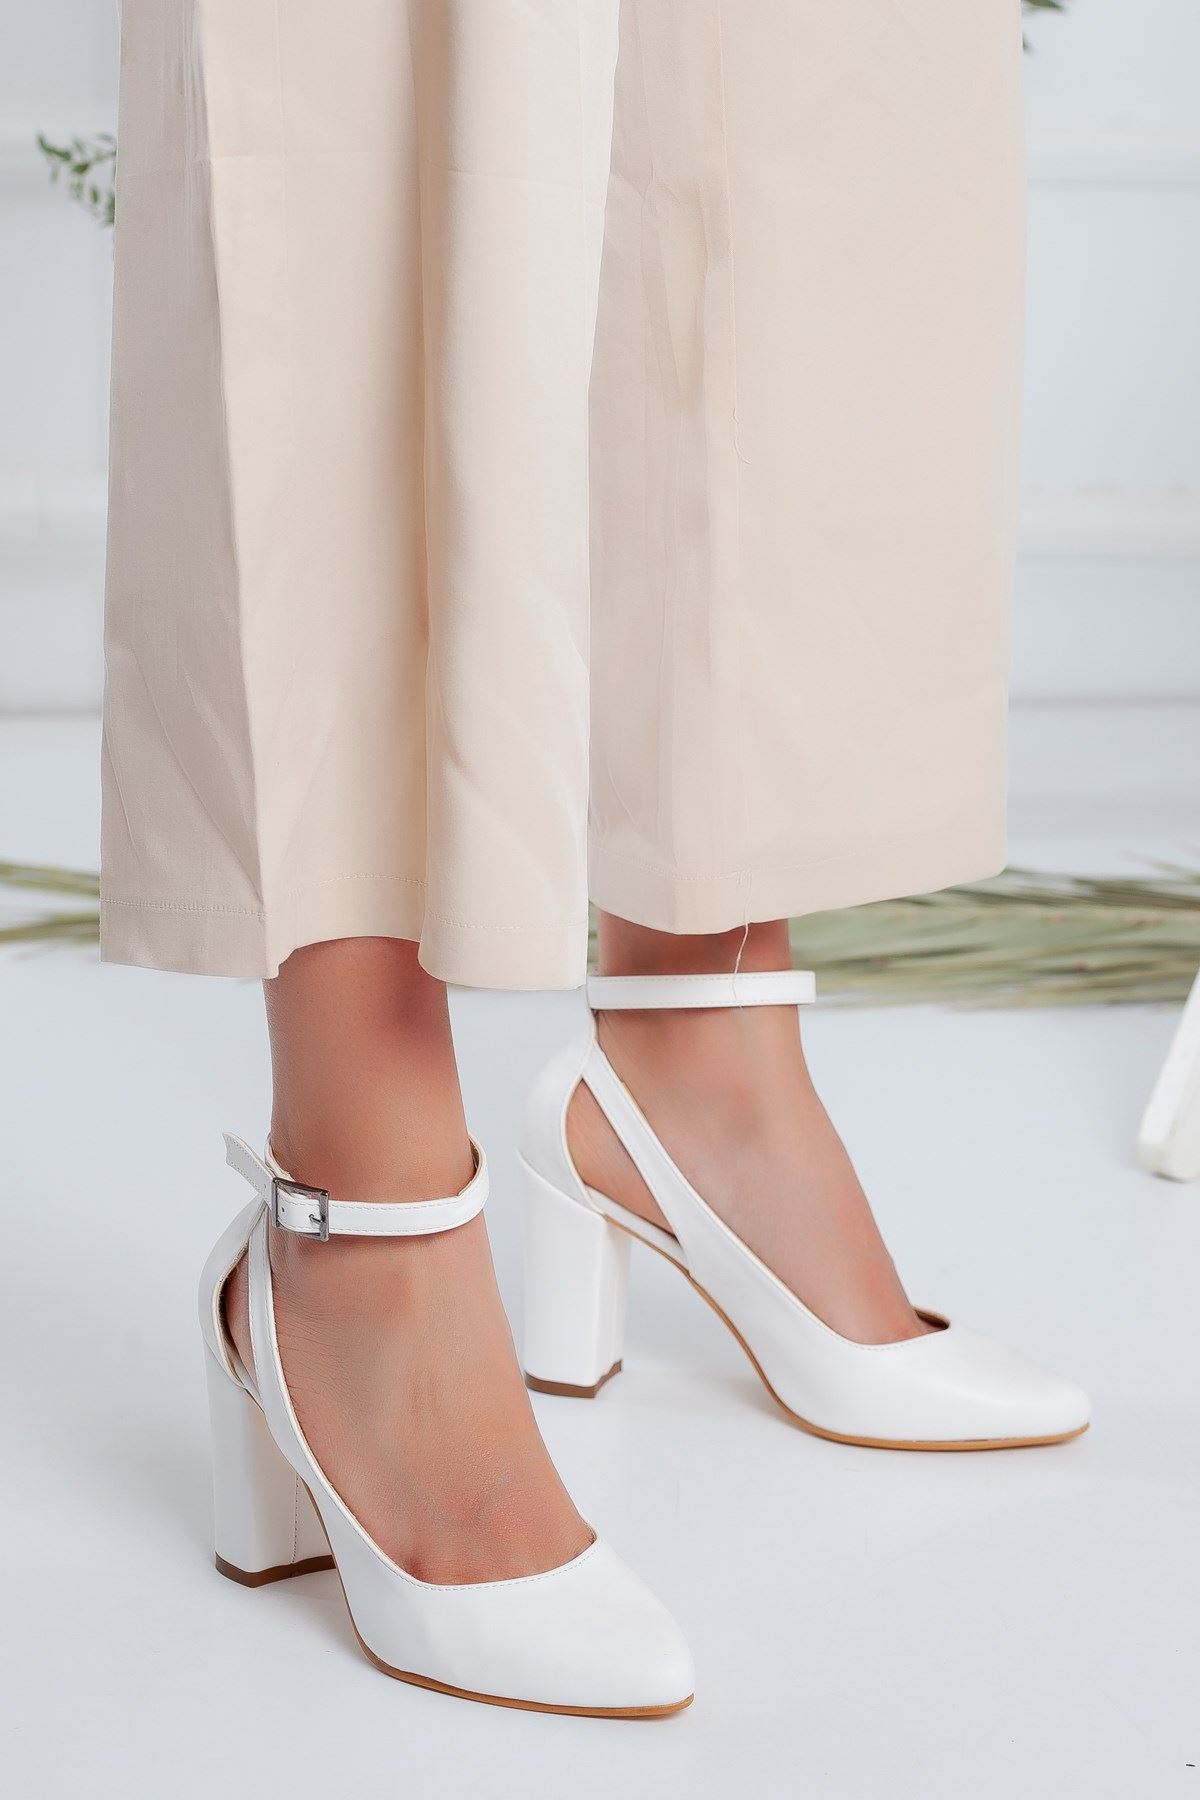 Lillian Topuklu Beyaz Cilt Ayakkabı